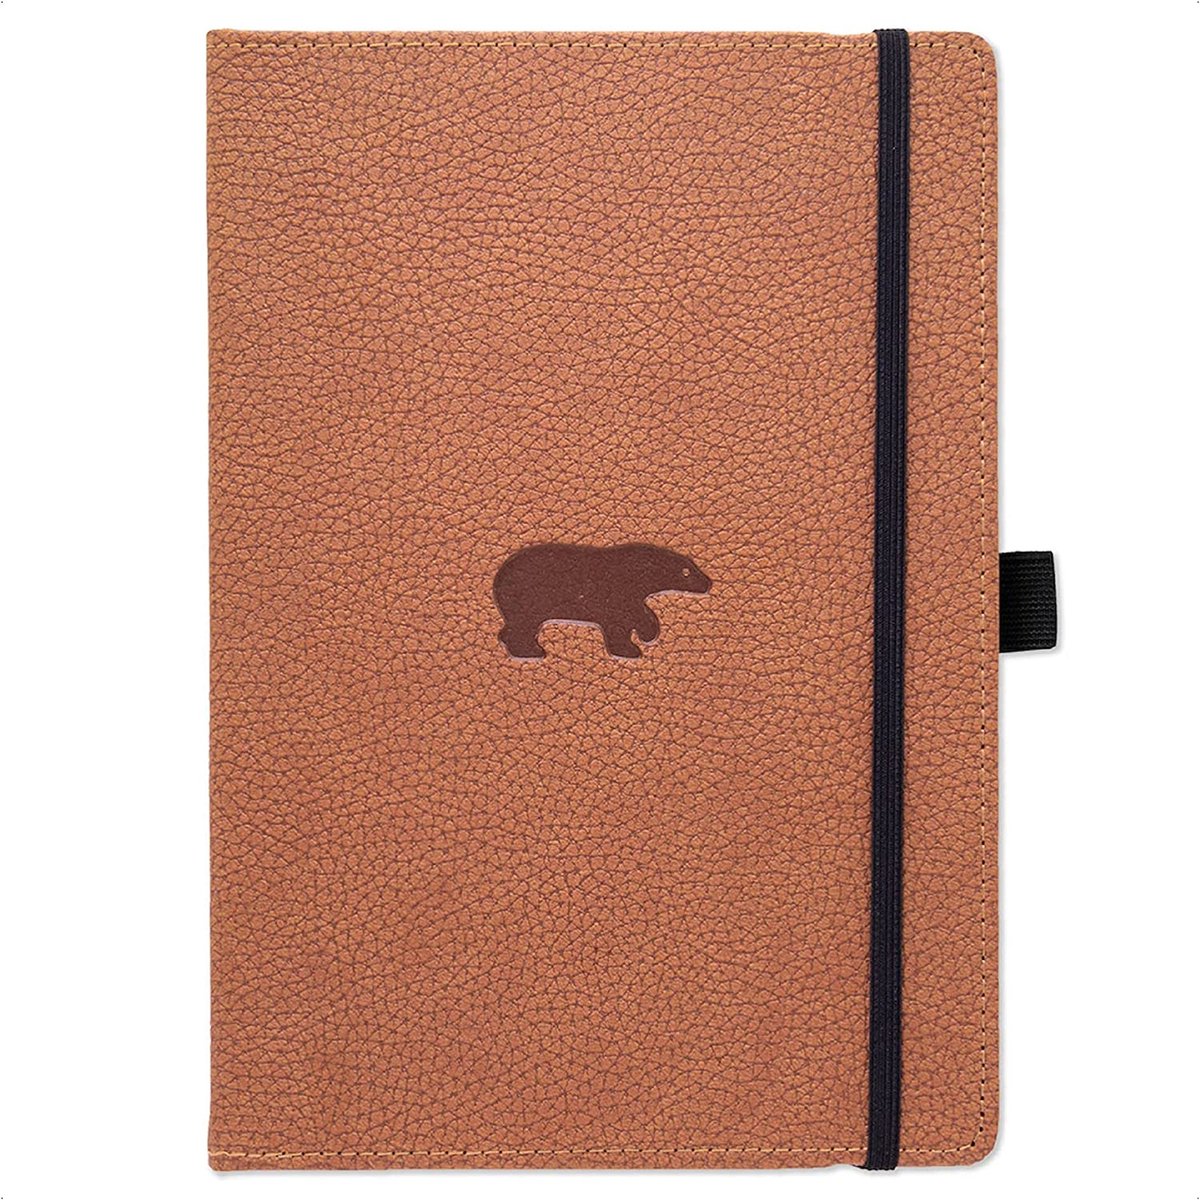 Dingbats* Wildlife A6 Notitieboek - Brown Bear Blanco - Bullet Journal met 100 gsm Inktvrij Papier - Schetsboek met Harde Kaft, Binnenvak, Elastische Sluiting en Bladwijzer